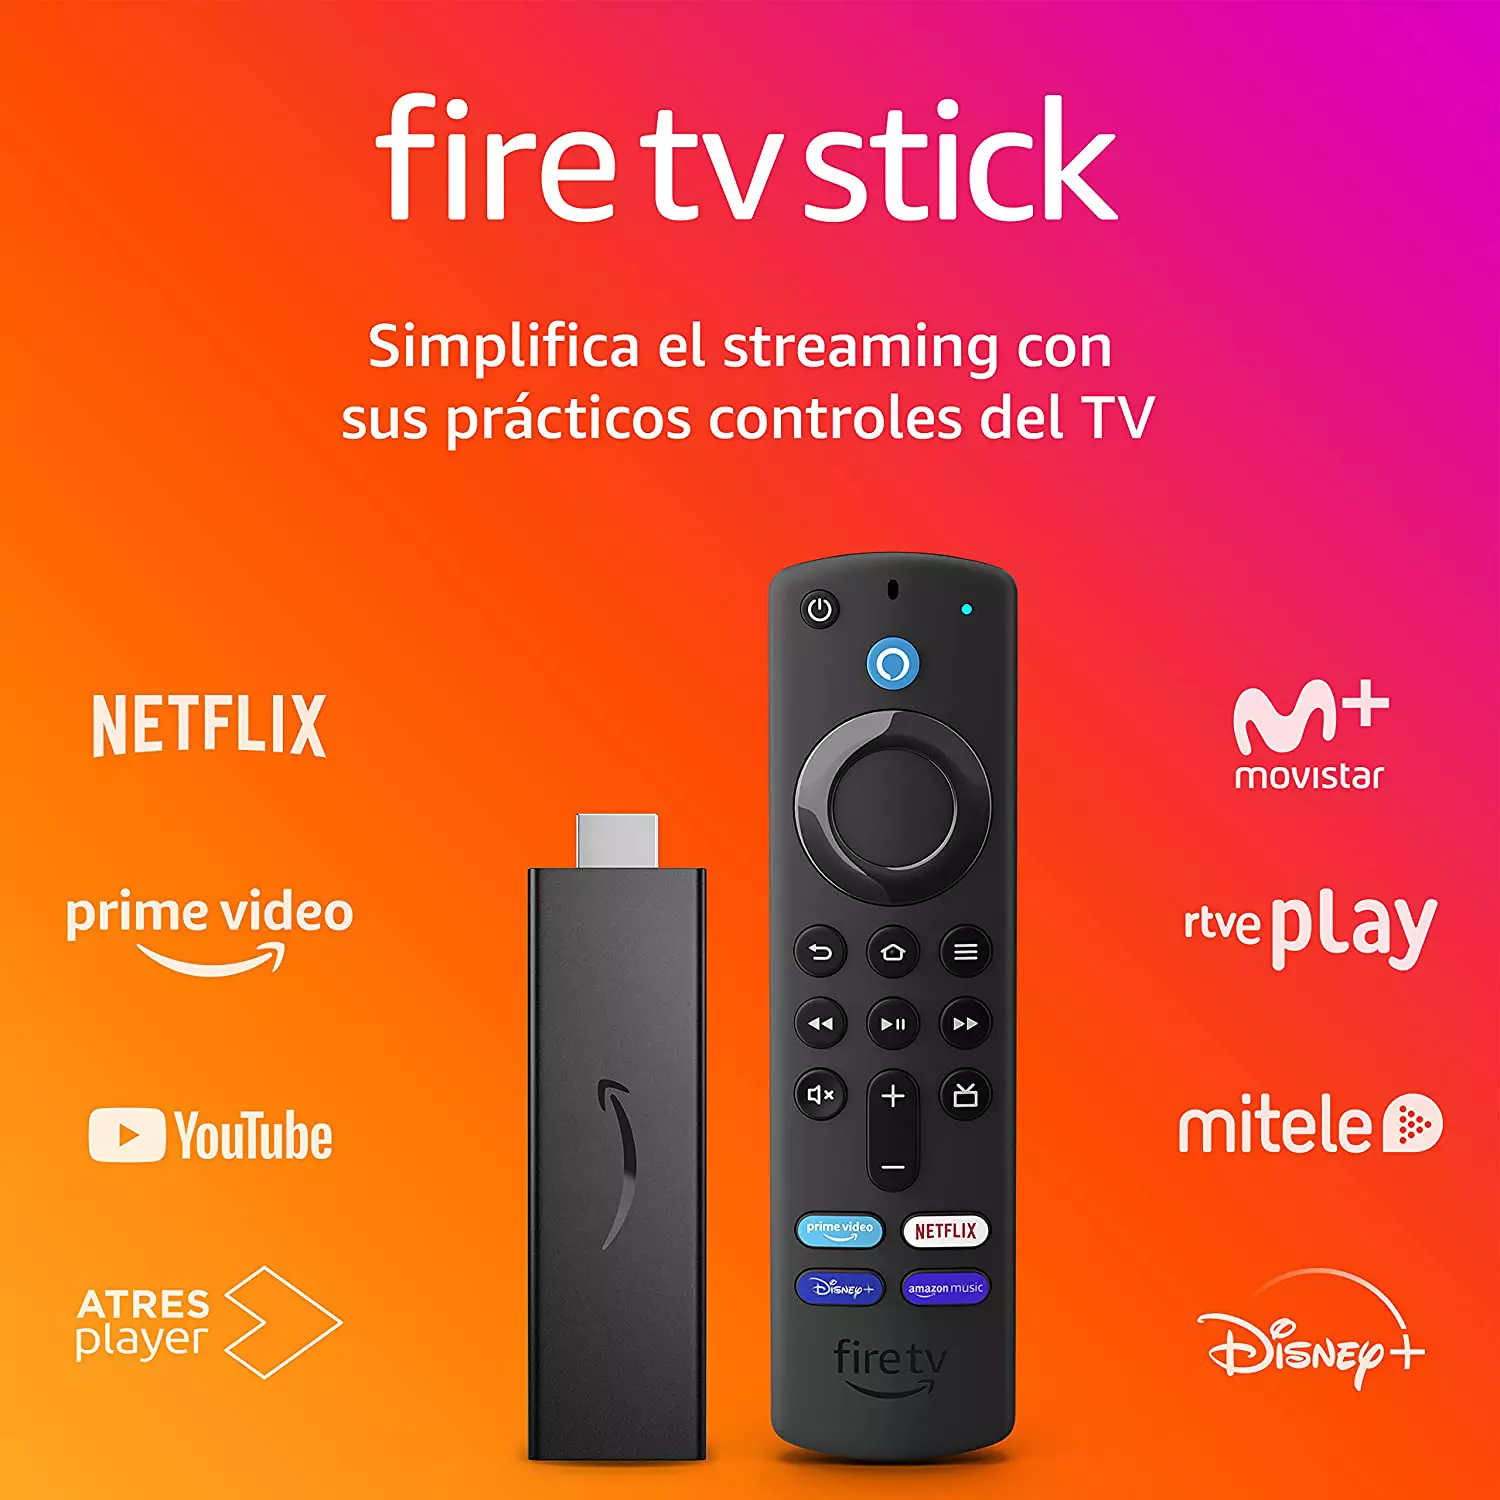 Oferta Especial Fire TV Stick con mando por voz Alexa (incluye controles del TV), dispositivo de streaming HD por solo 24,99€